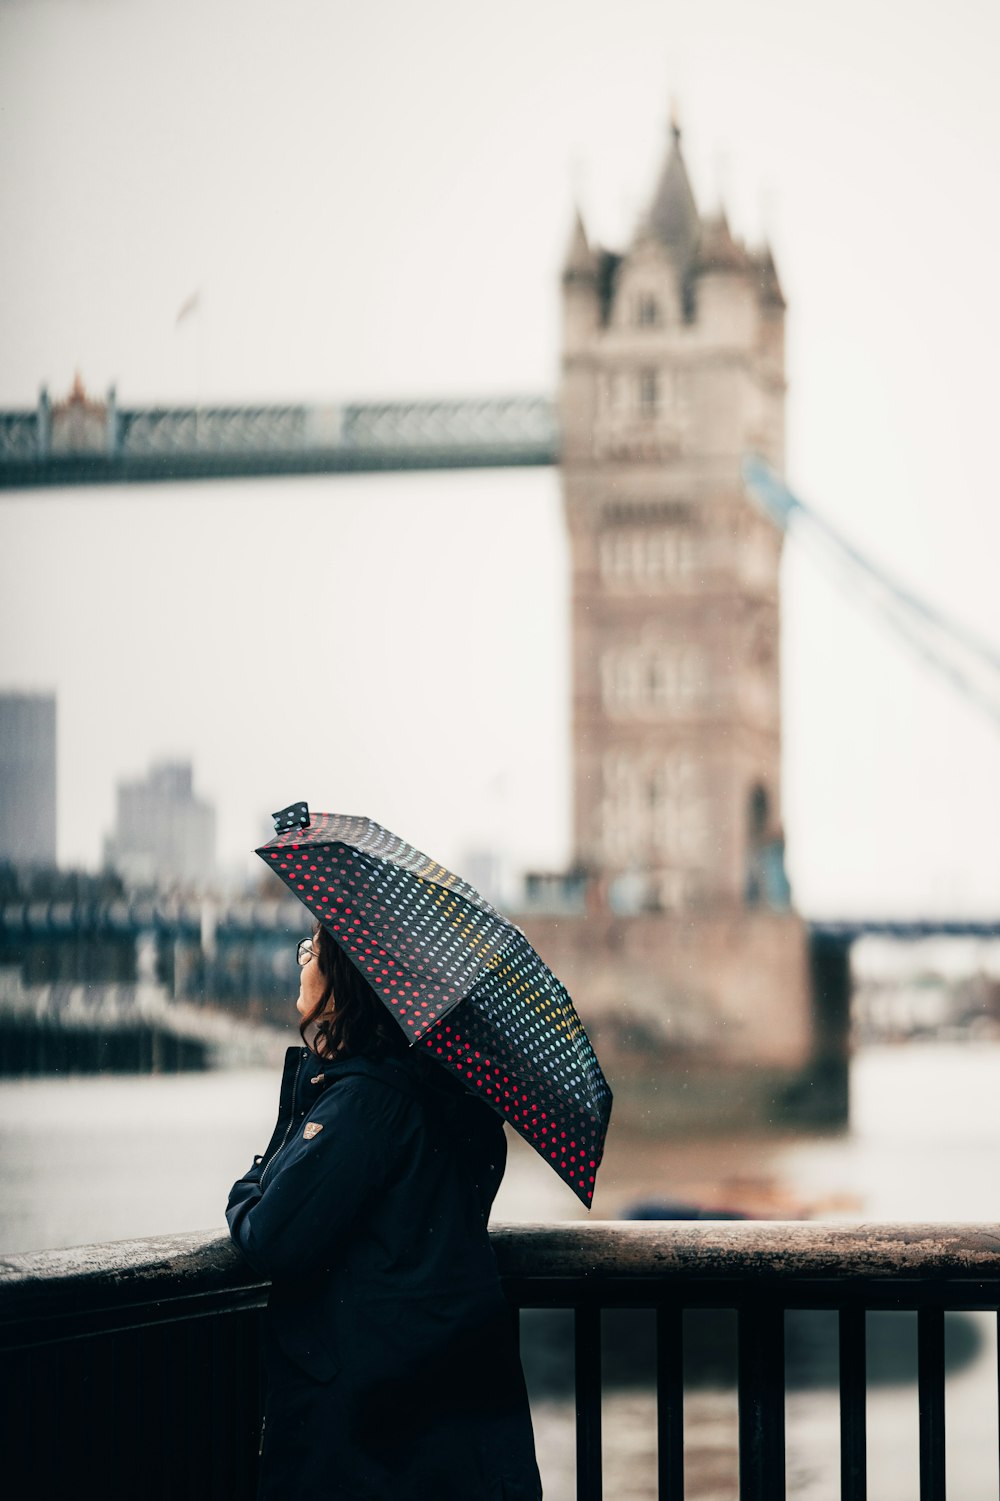 mulher na jaqueta preta que segura o guarda-chuva vermelho e branco